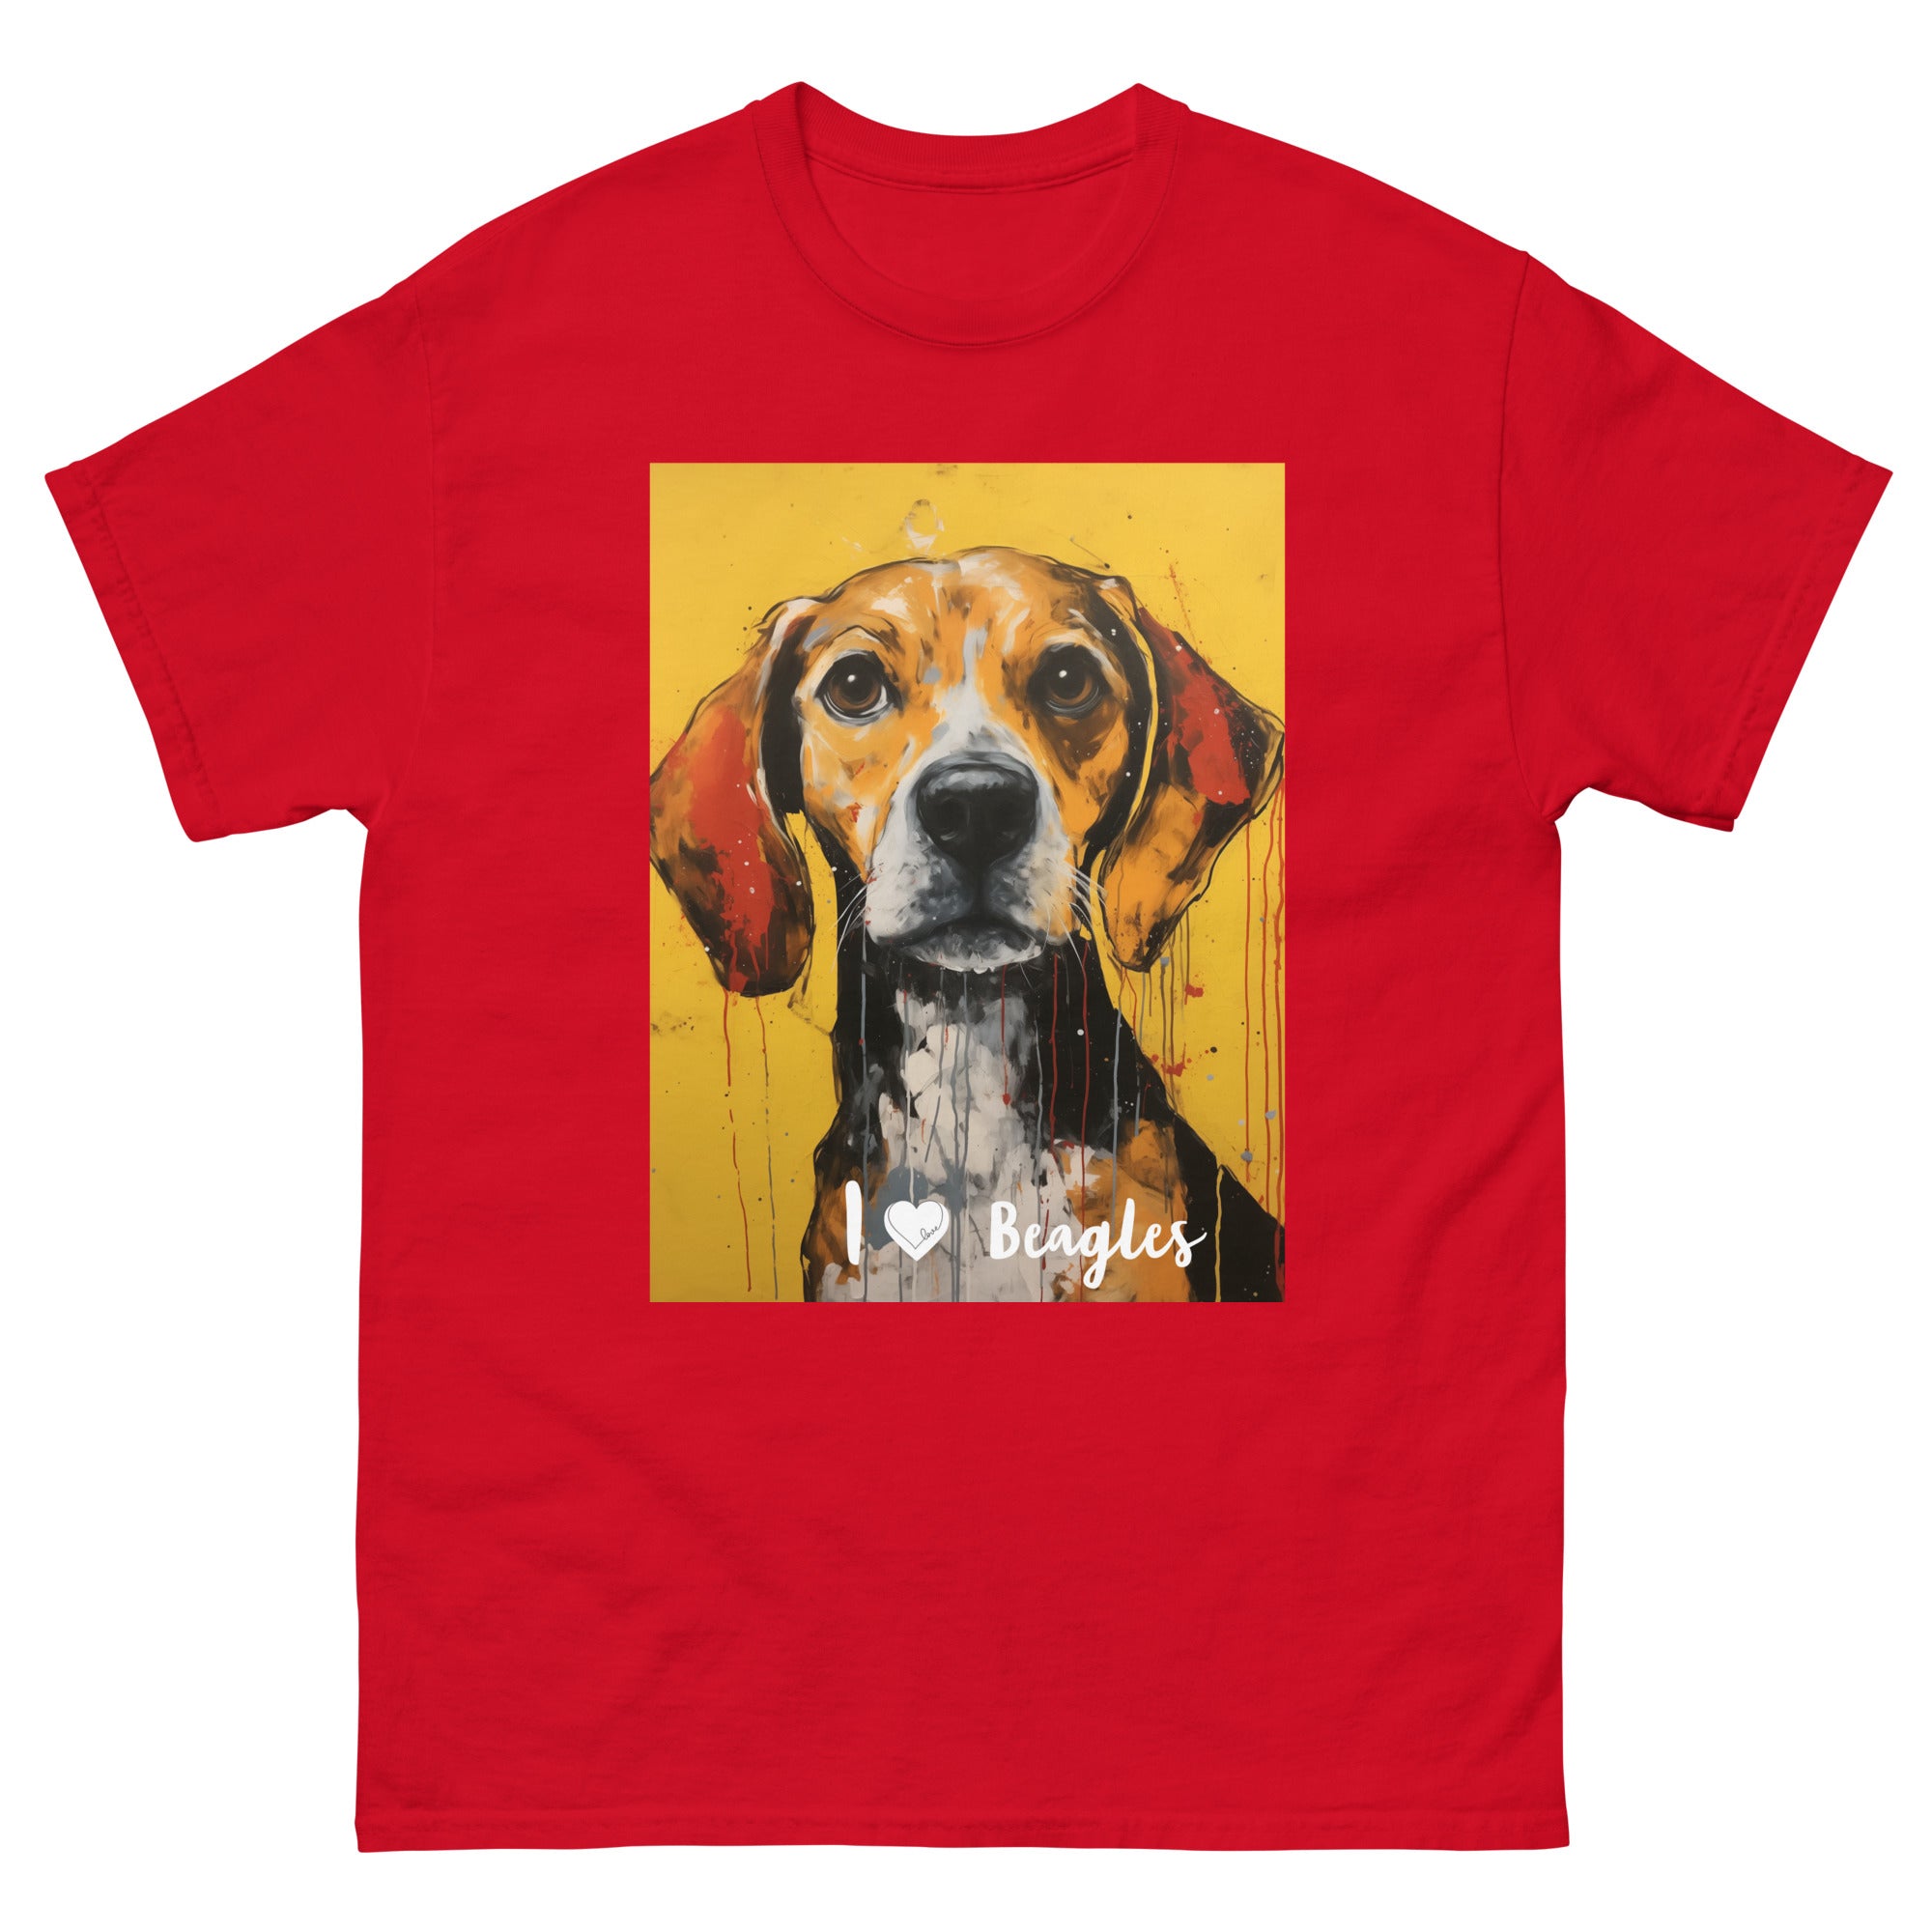 Men's classic tee - I ❤ DOGS - Beagle